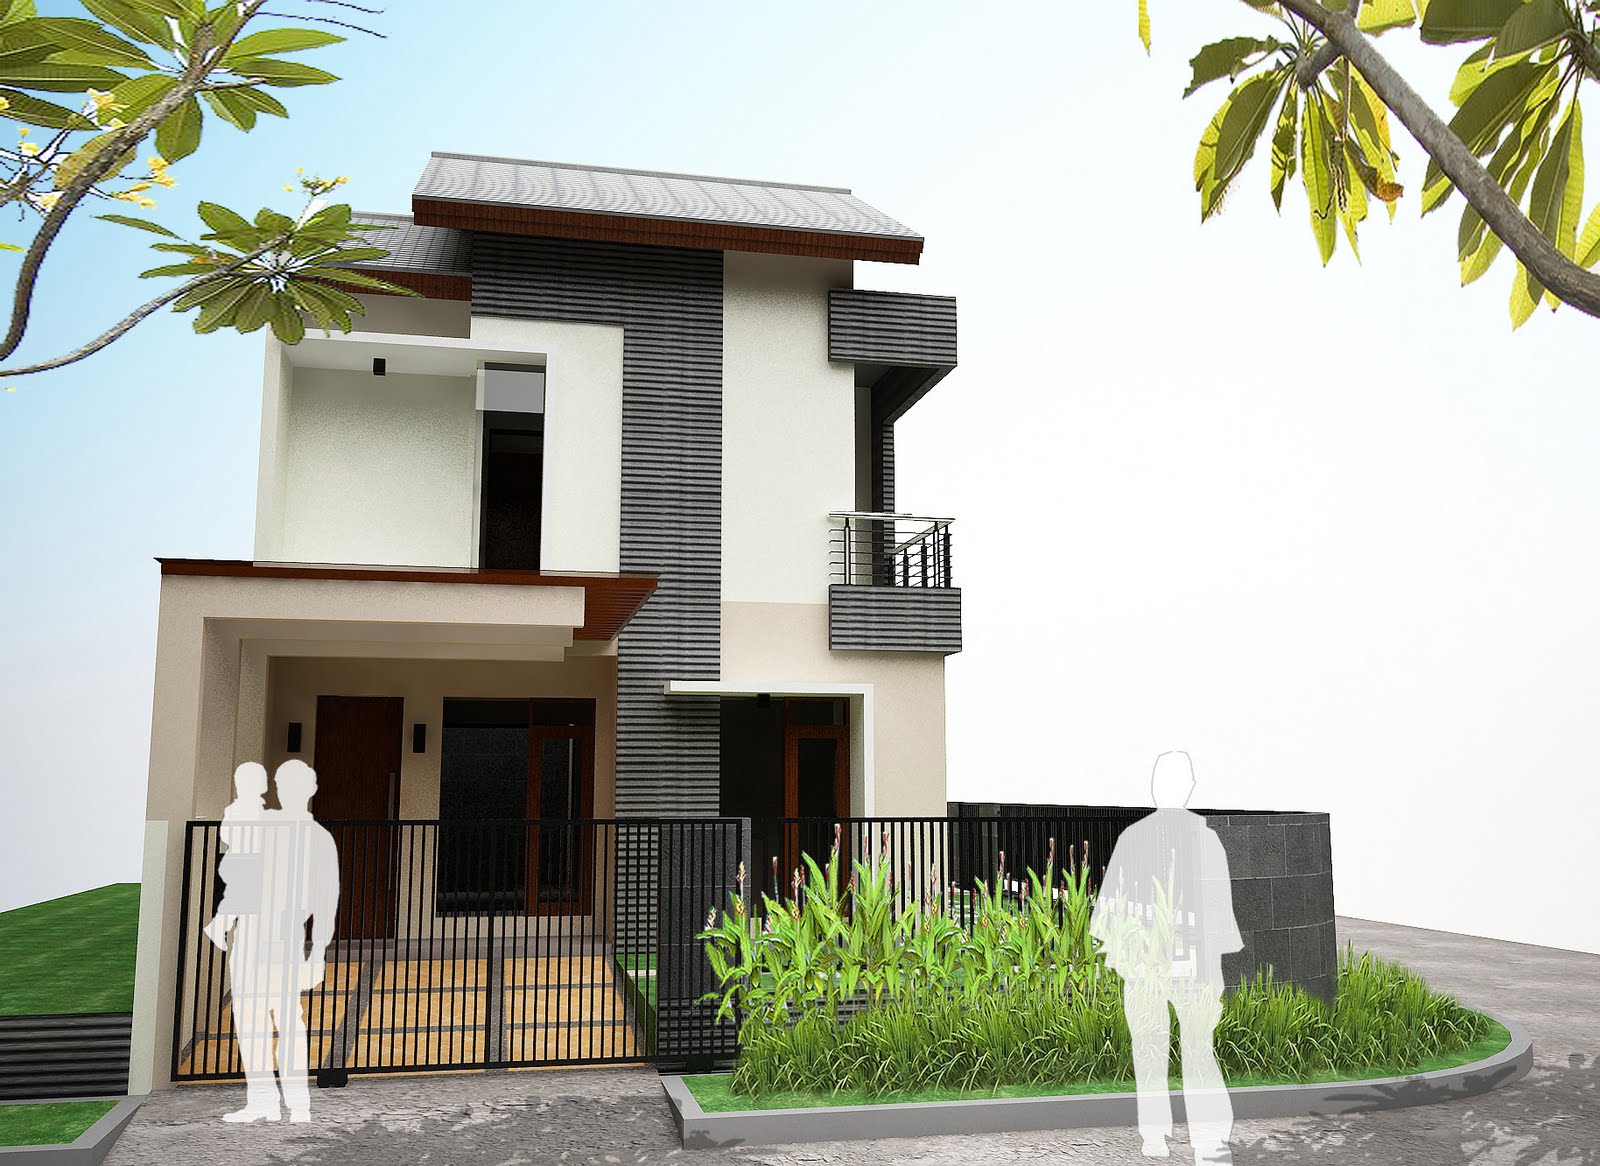 102 Desain Rumah Minimalis Modern Jawa Gambar Desain Rumah Minimalis